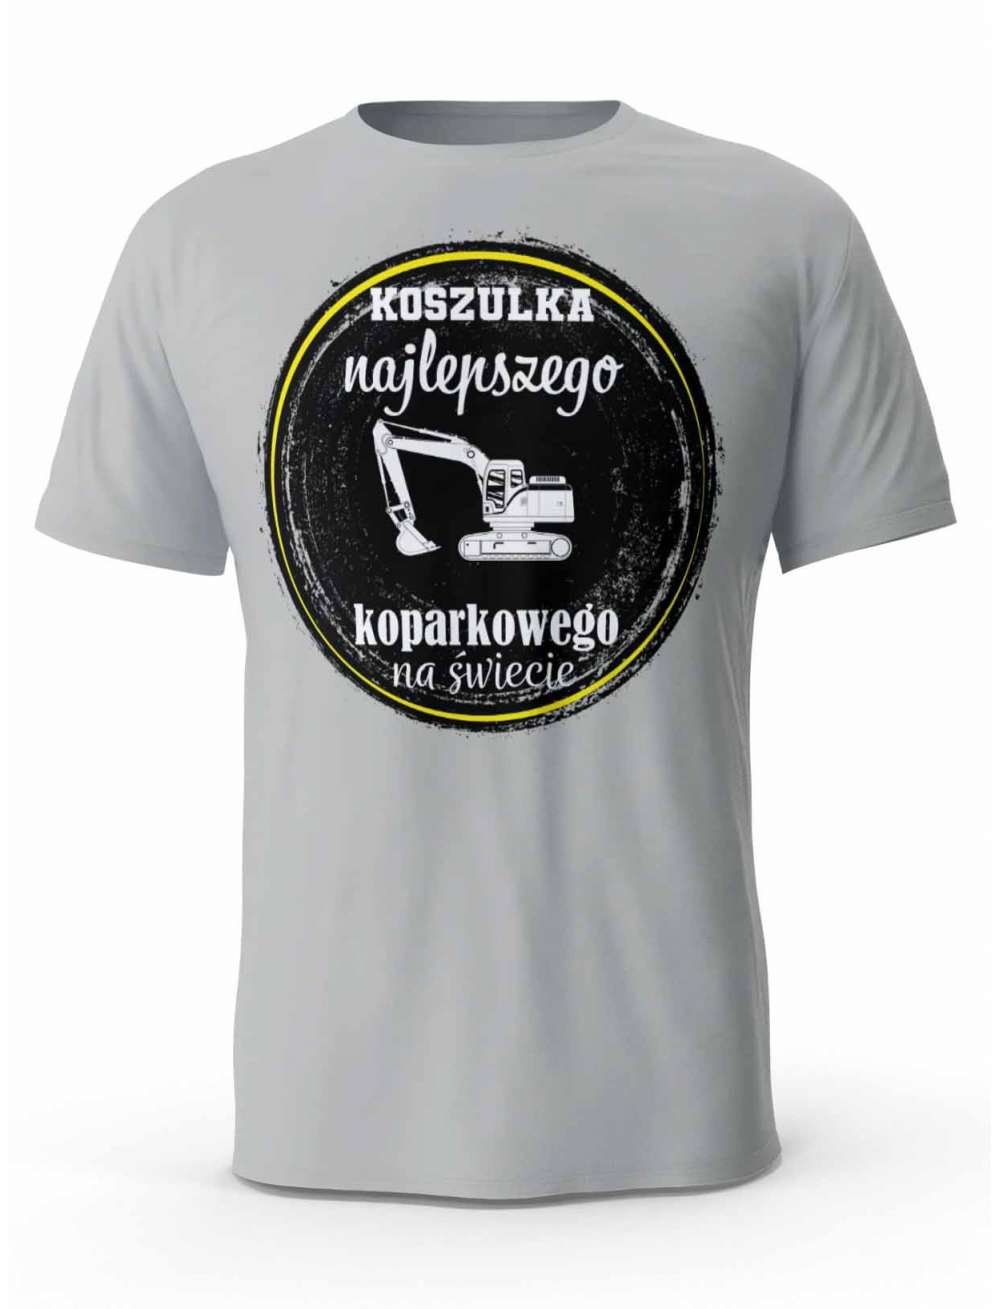 Koszulka Najlepszego Koparkowego, T-shirt Męski, Prezent